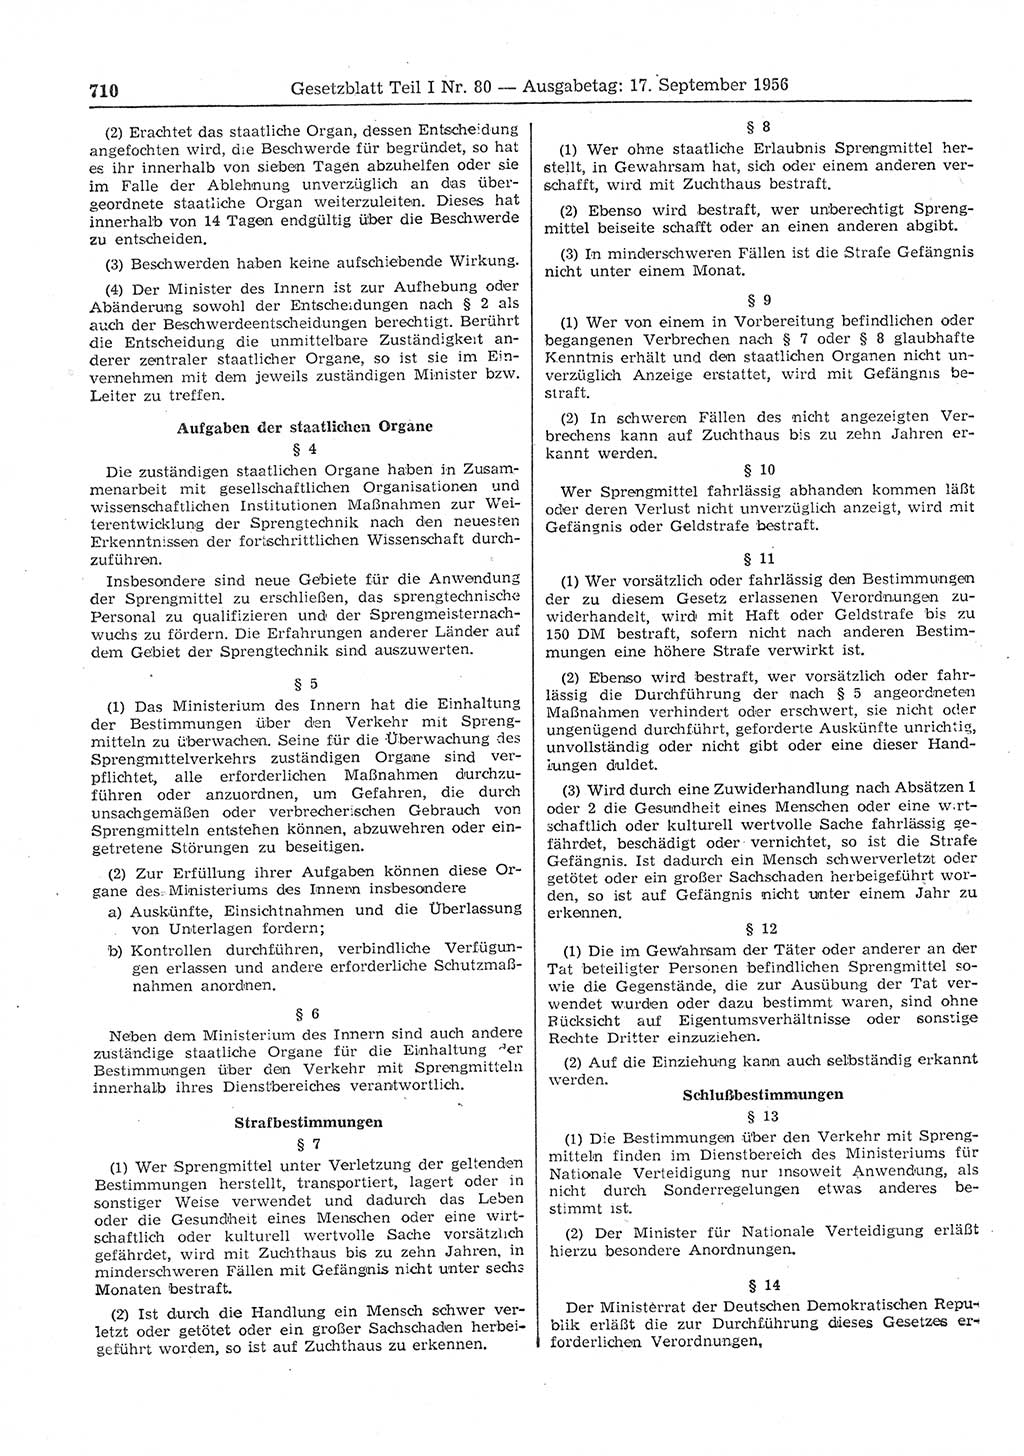 Gesetzblatt (GBl.) der Deutschen Demokratischen Republik (DDR) Teil â… 1956, Seite 710 (GBl. DDR â… 1956, S. 710)